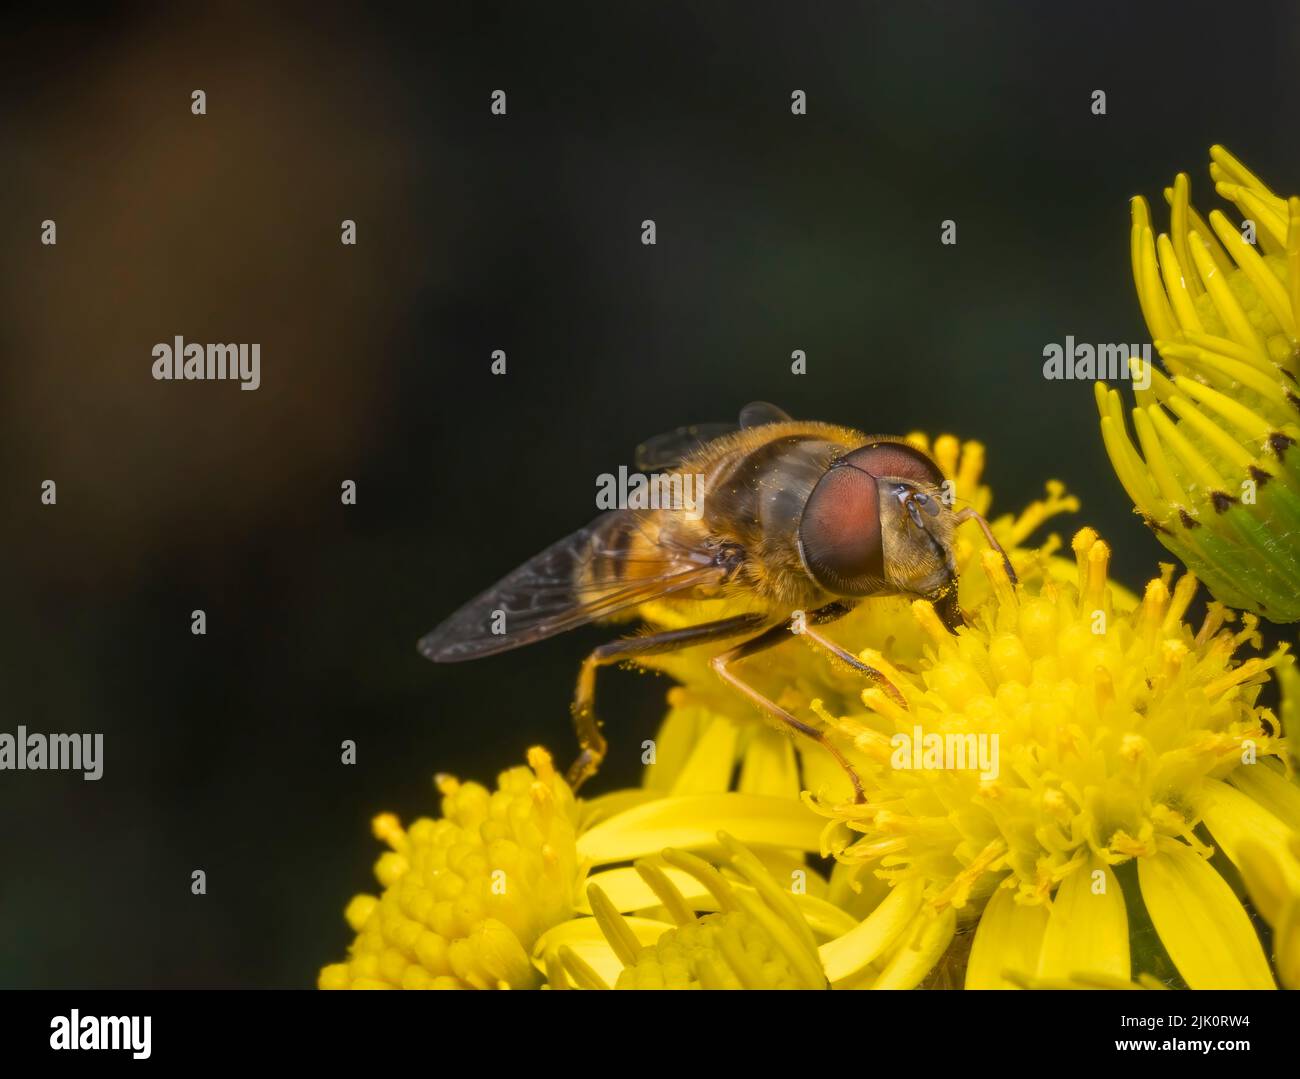 Una mosca inofensiva de Hover, con grandes ojos rojos, sorbe néctar de las flores de una planta de Ragwort Foto de stock